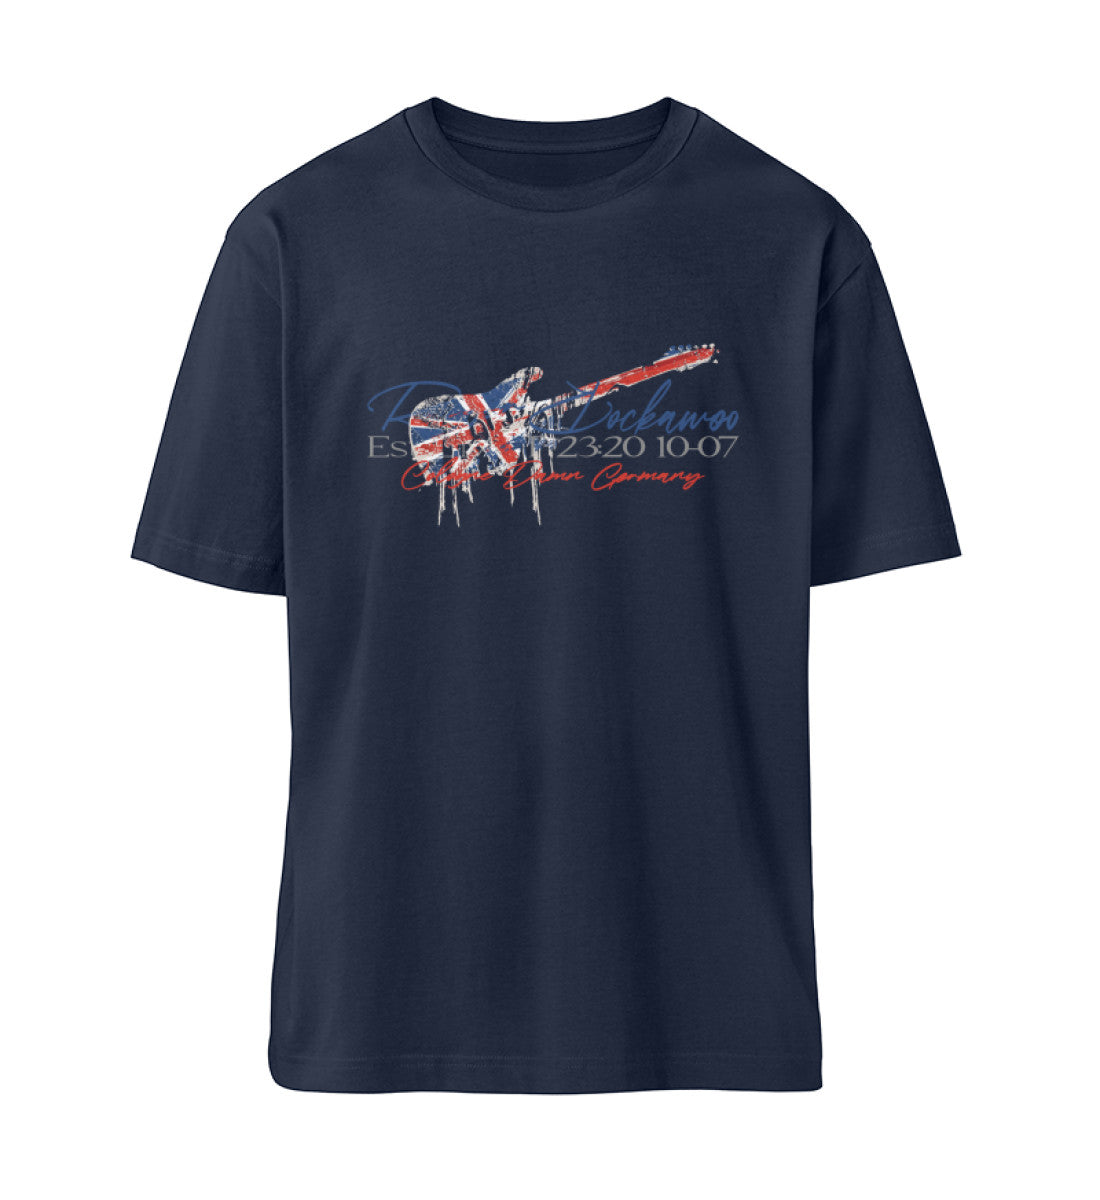 Navy Blue T-Shirt Unisex Relaxed Fit für Frauen und Männer bedruckt mit dem Design der Roger Rockawoo Kollektion Guitar Britpop Tragedy